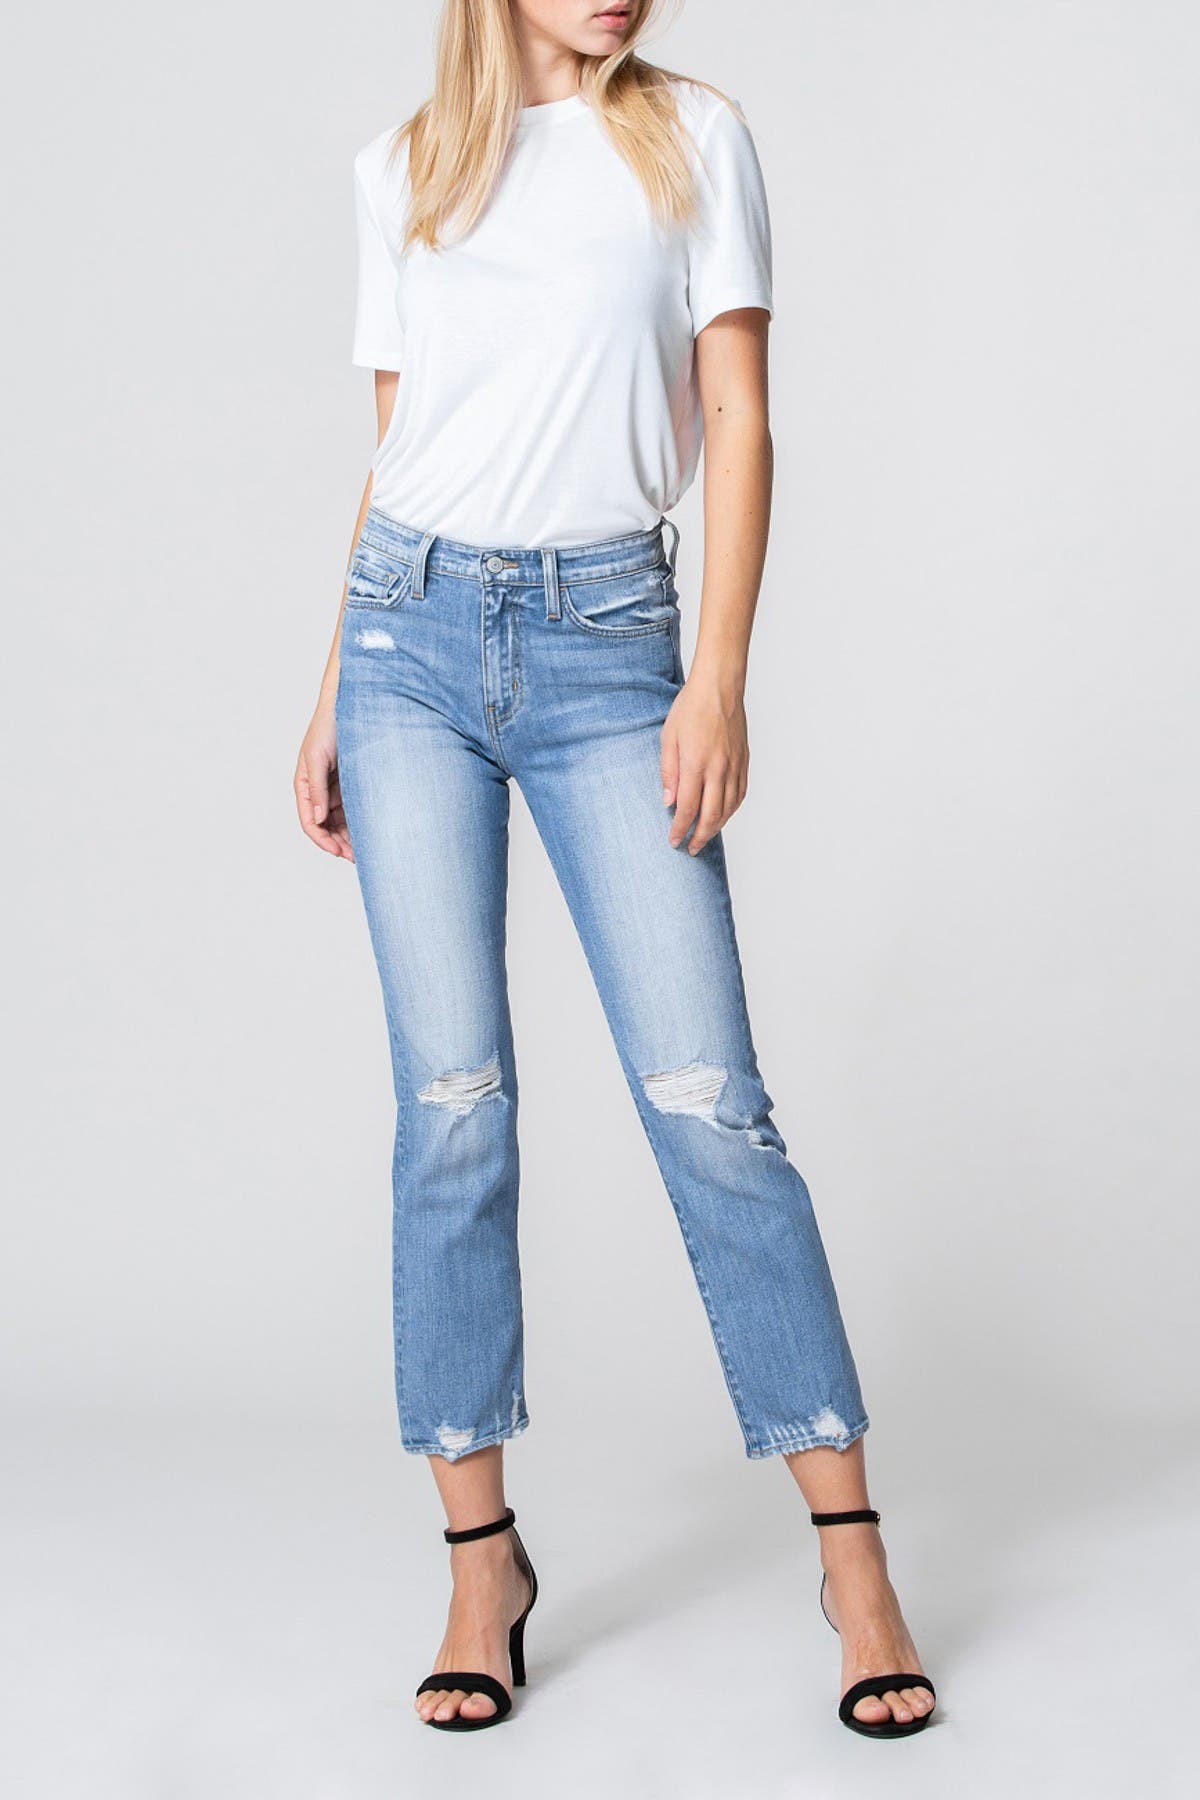 buy cheap levis jeans online